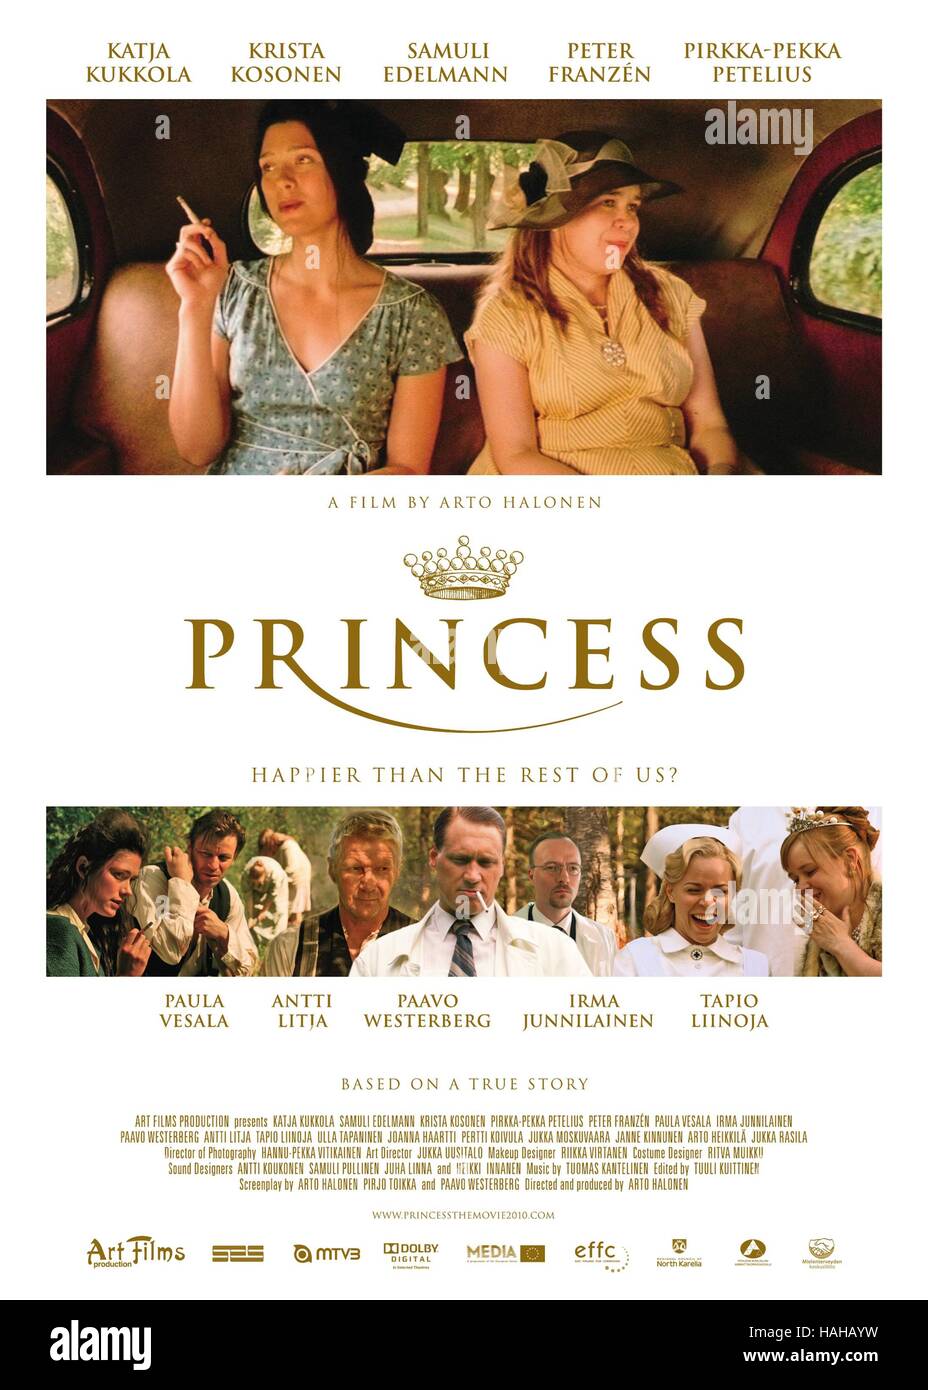 Princess Prinsessa Year : 2010 Finland Director : Arto Halonen Krista Kosonen, Katja Kukkola Movie poster (USA) Stock Photo